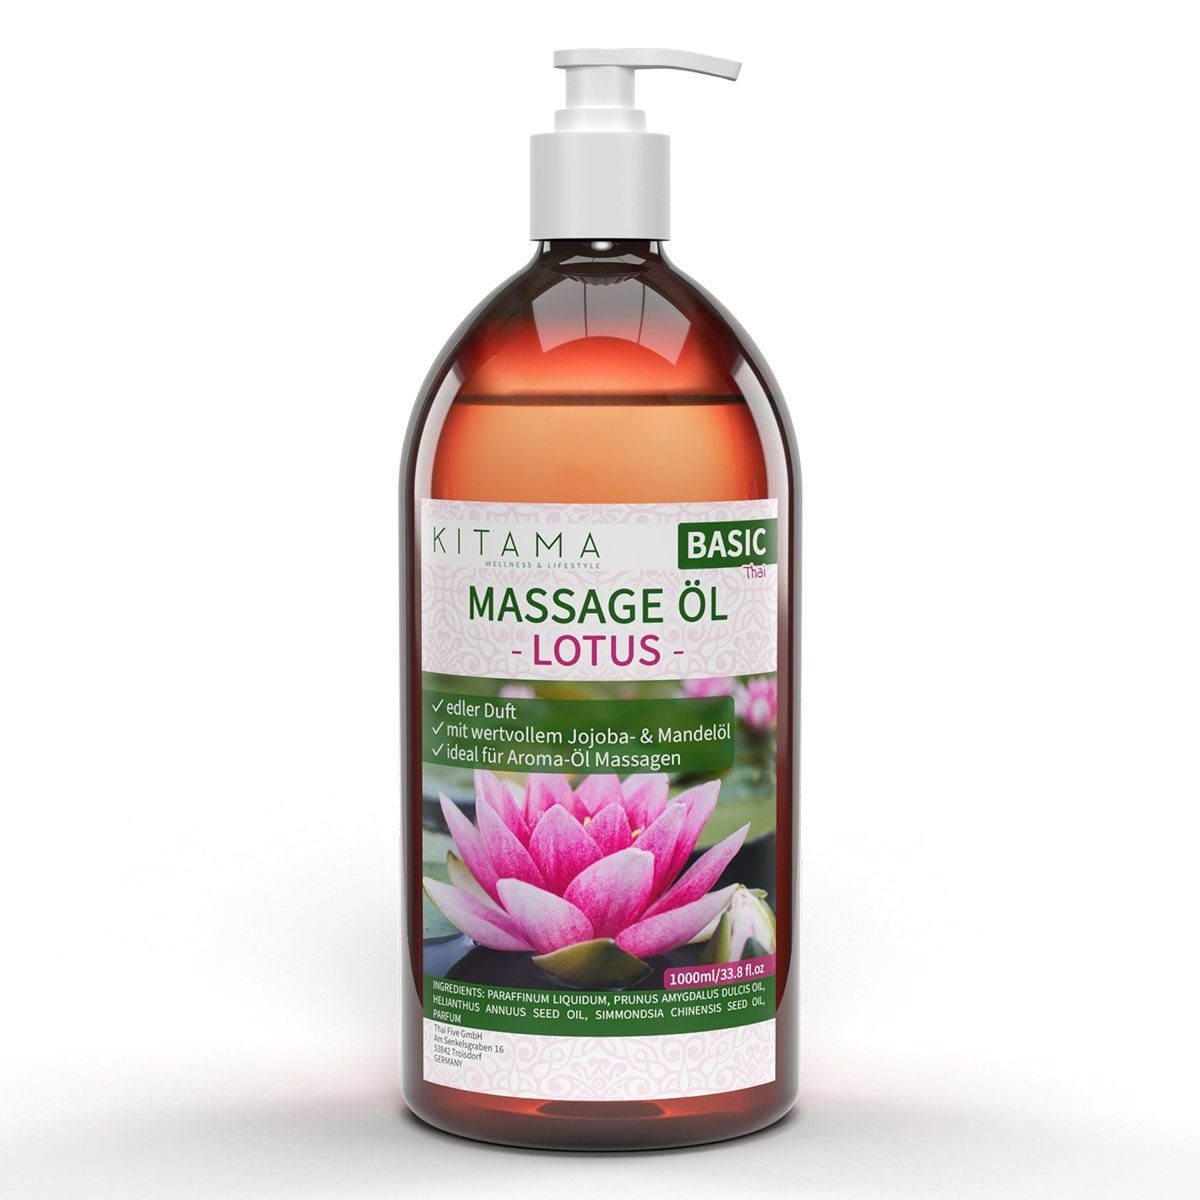 Kitama Massageöl mit Aroma - Körper-Öl für Massagen Pflegeöl Aroma-Öl Thai-Öl 1-Liter, Lotus